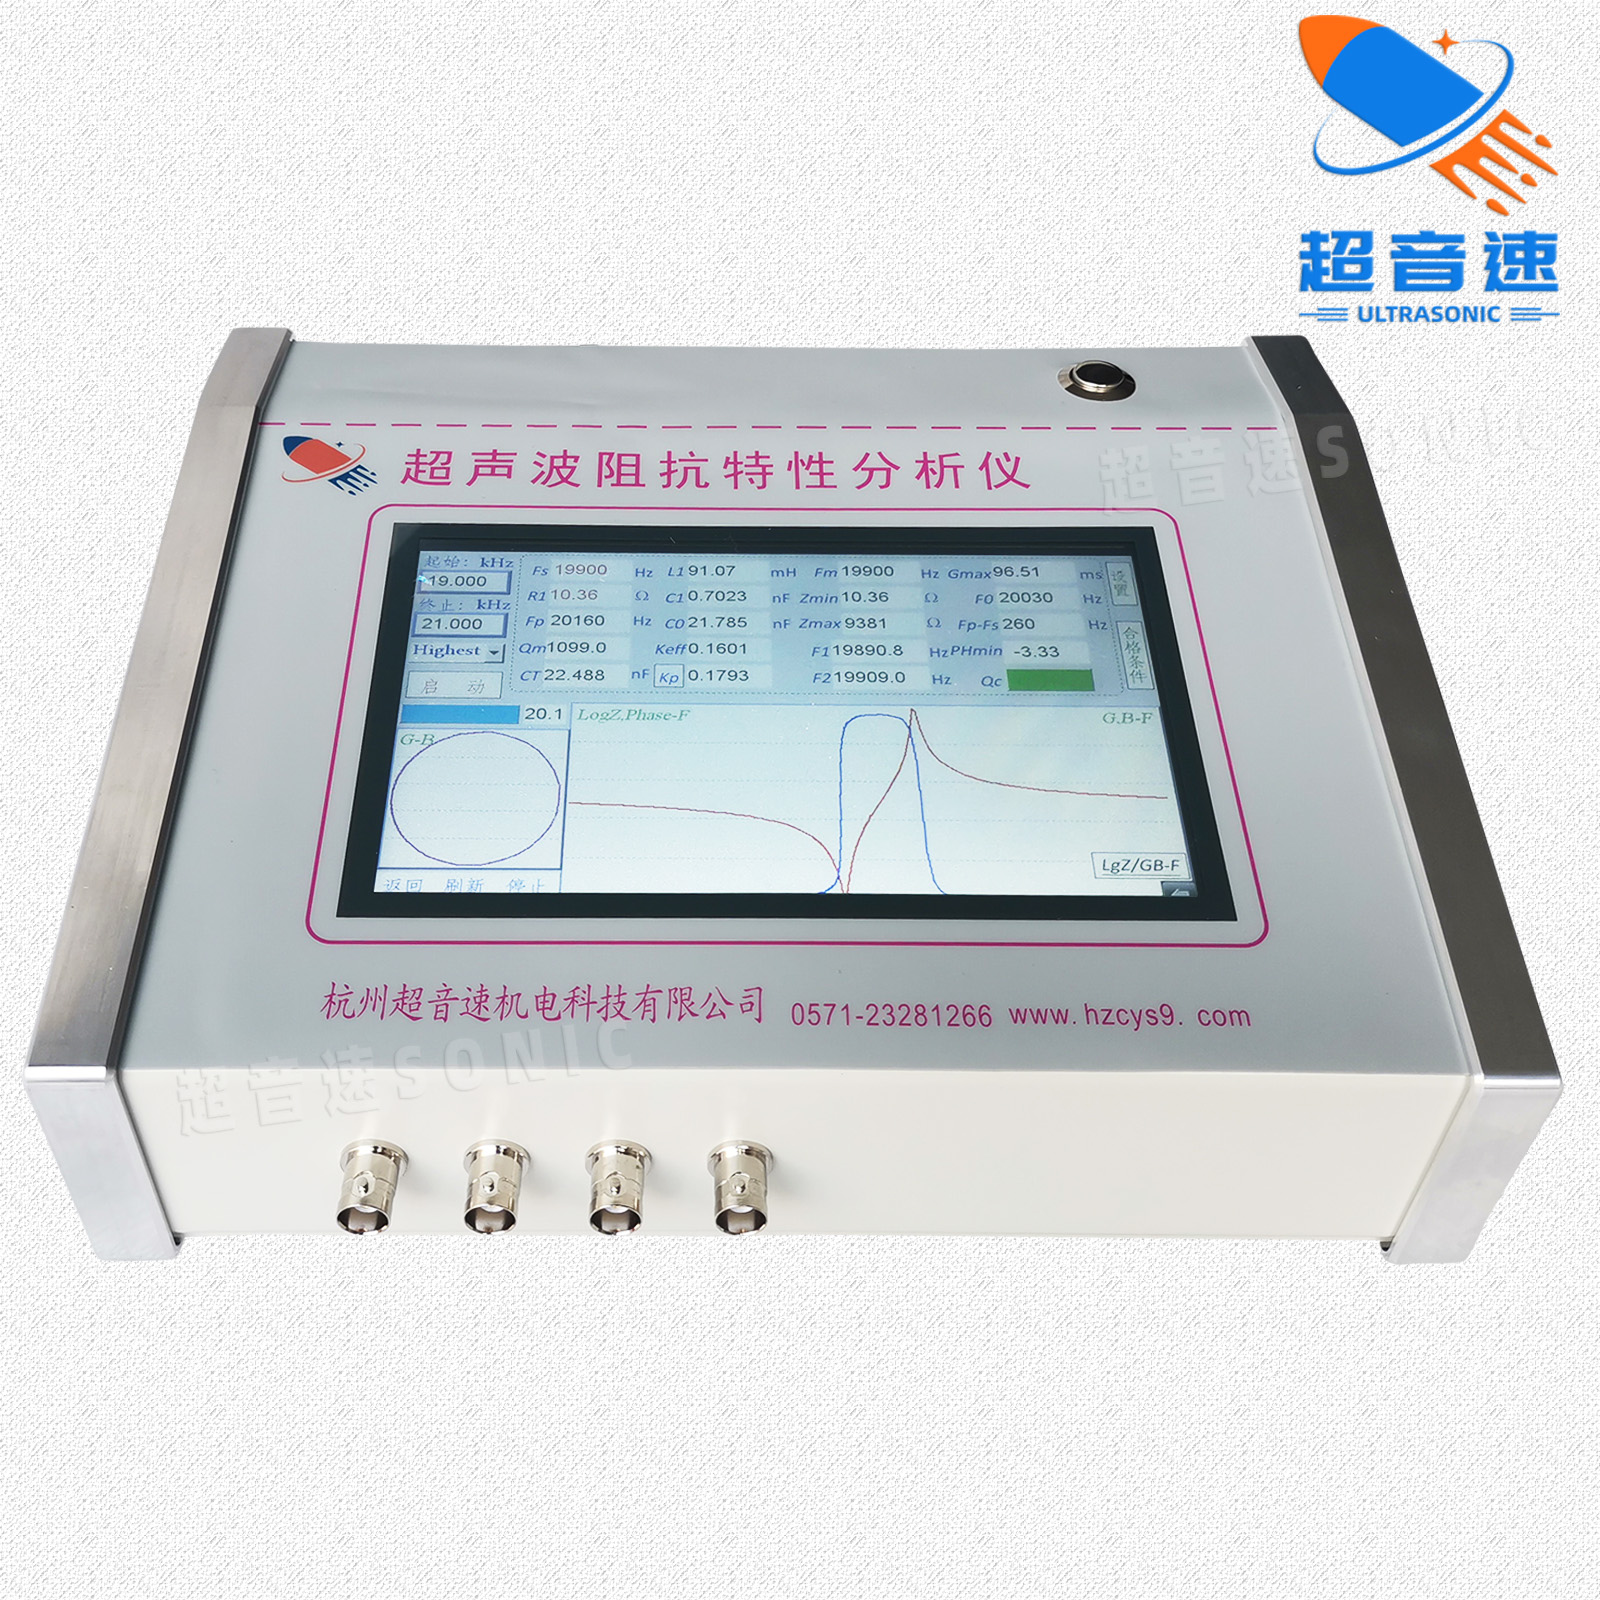 超音速SONIC 超音速SONIC超声波阻抗分析仪 压电陶瓷片分析仪 换能器元件电容频率测试仪 CYS-J301